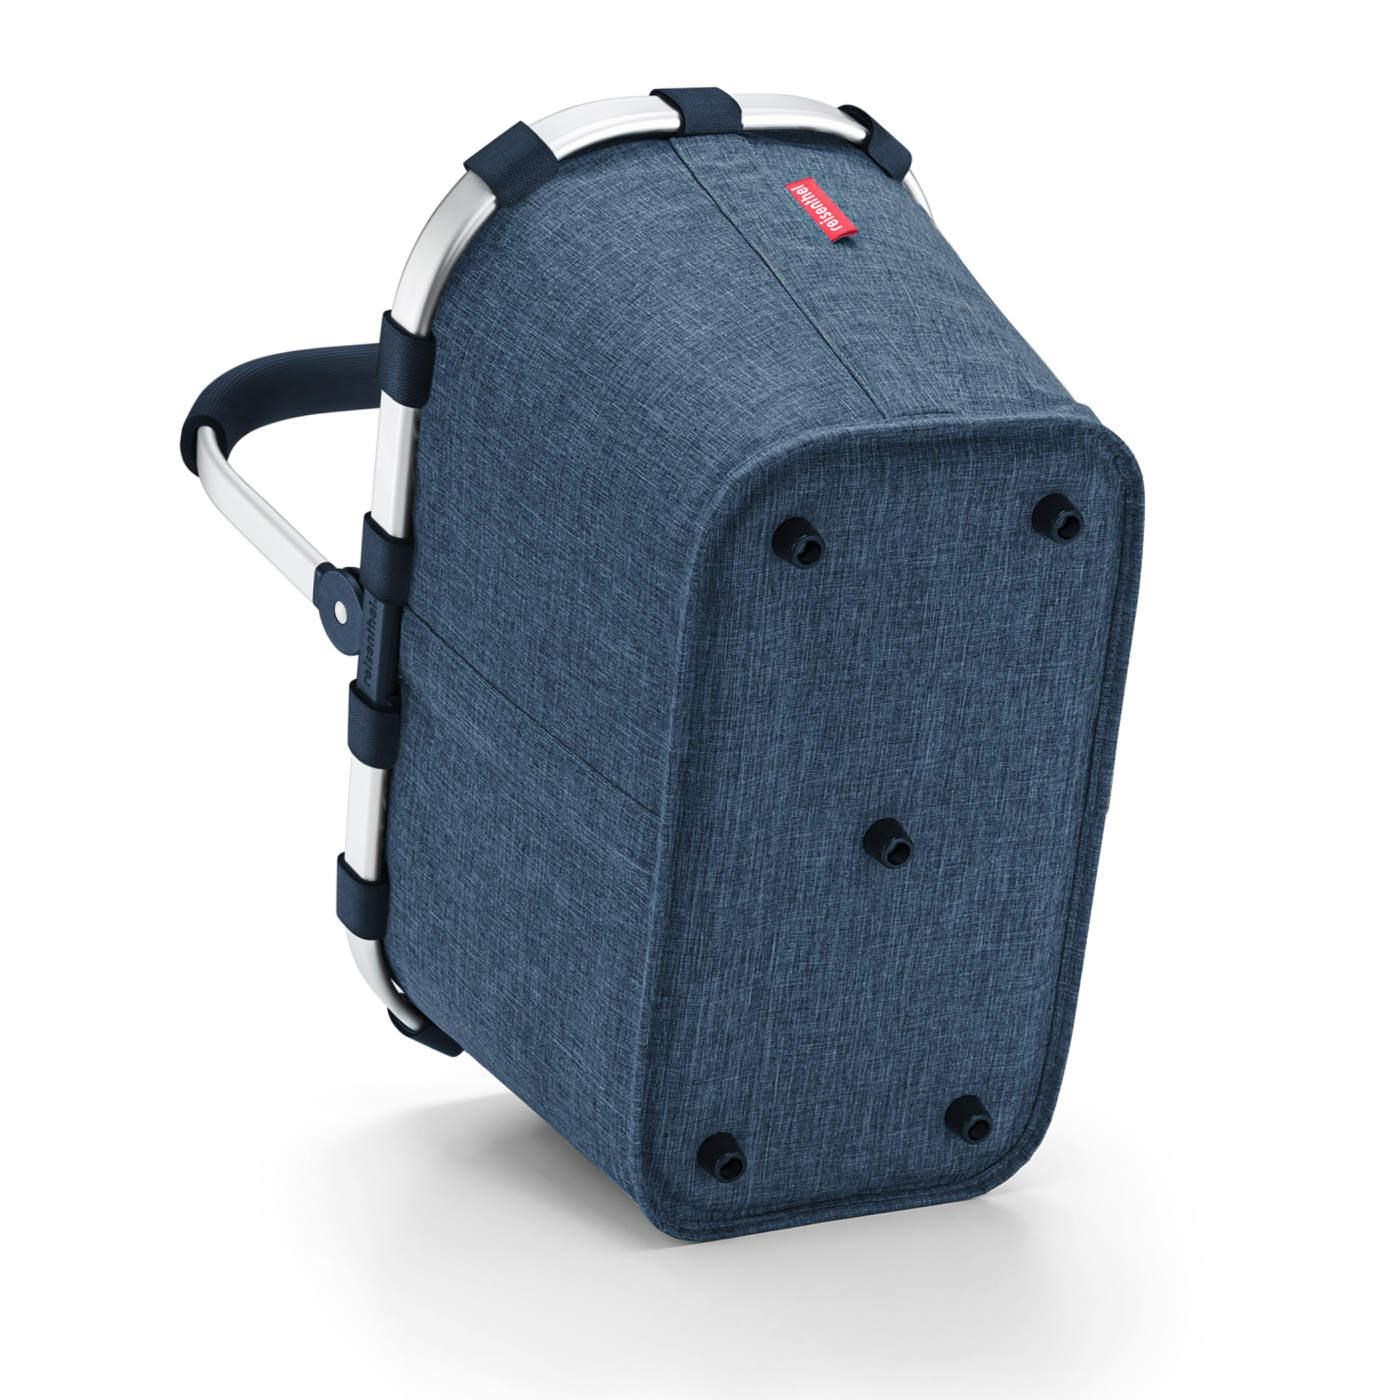 Nákupní košík Carrybag Frame twist blue_2